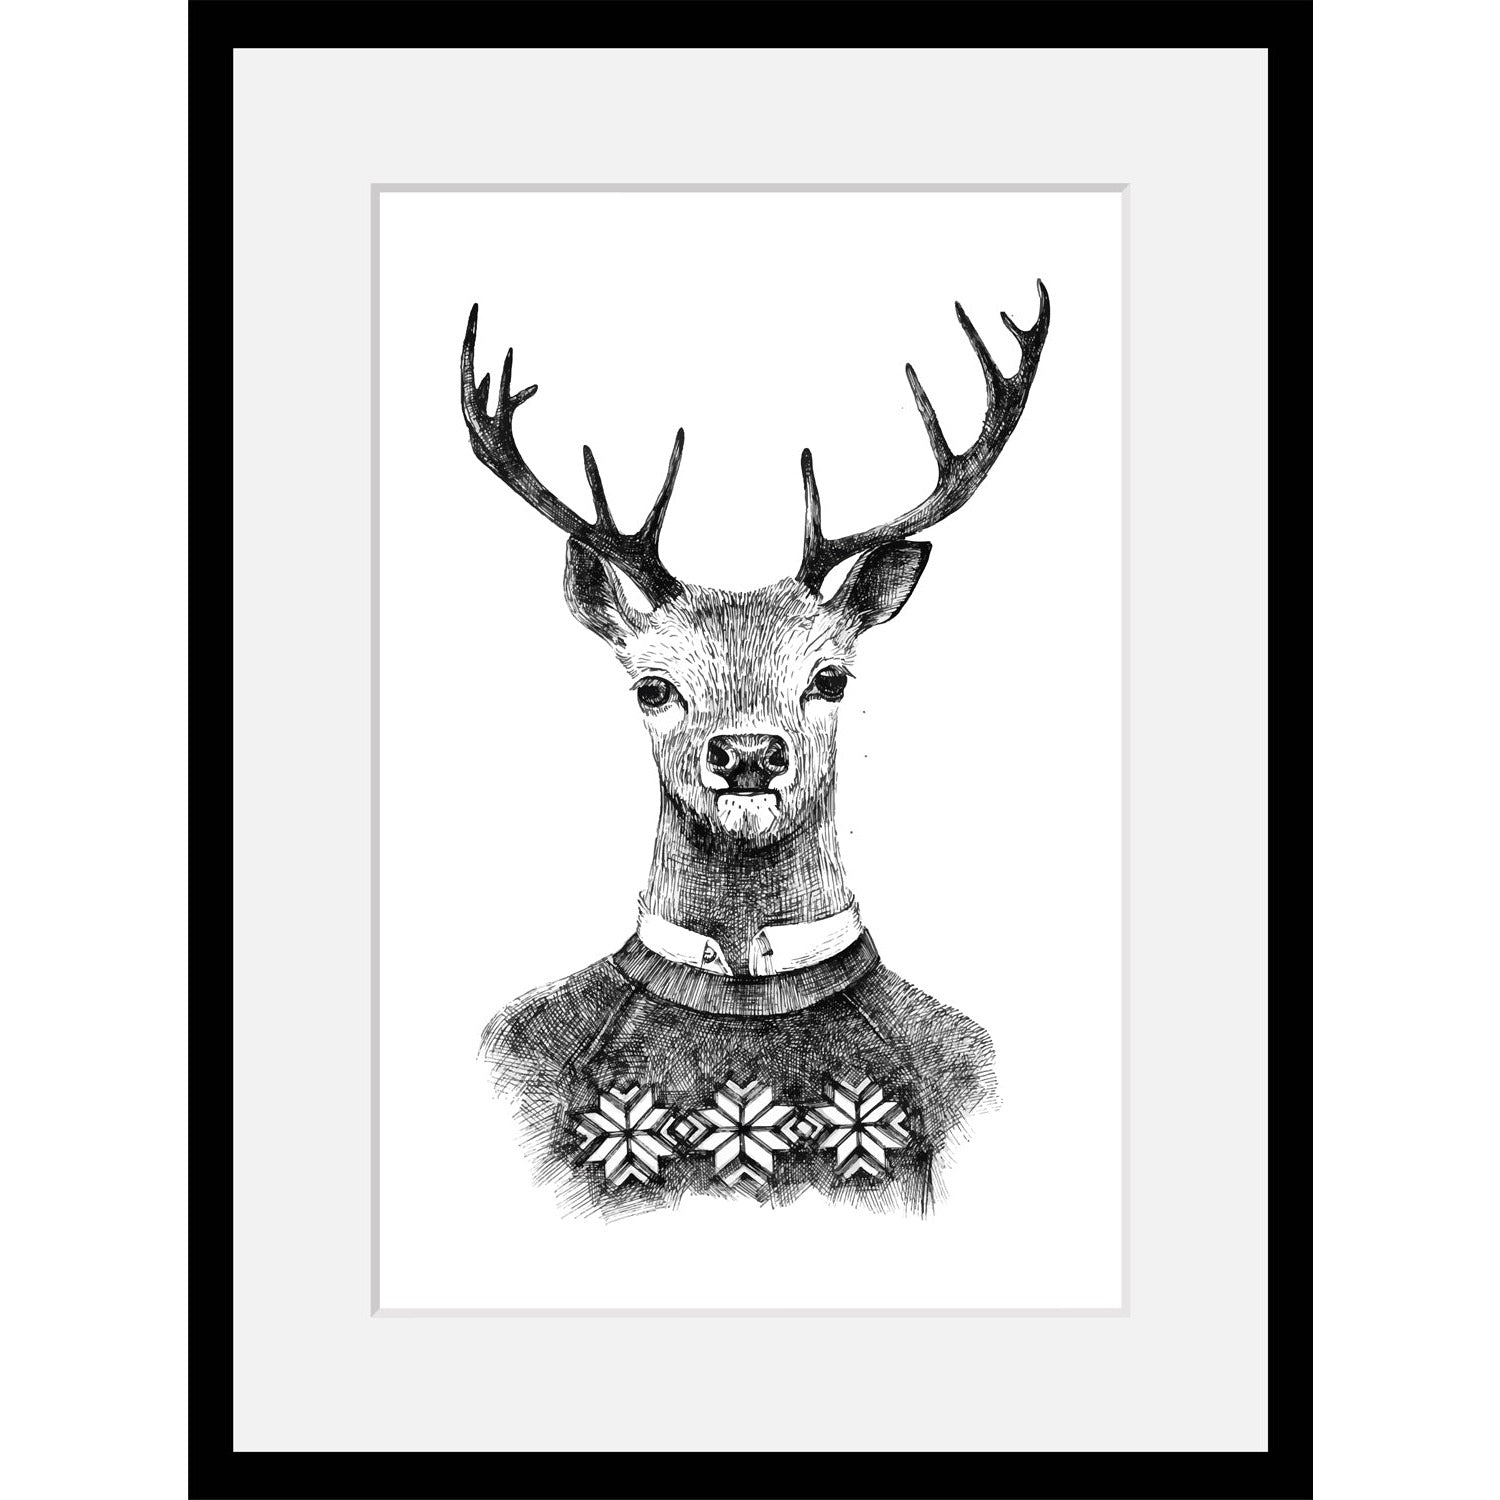 Rahmenbild - Drawn Deer